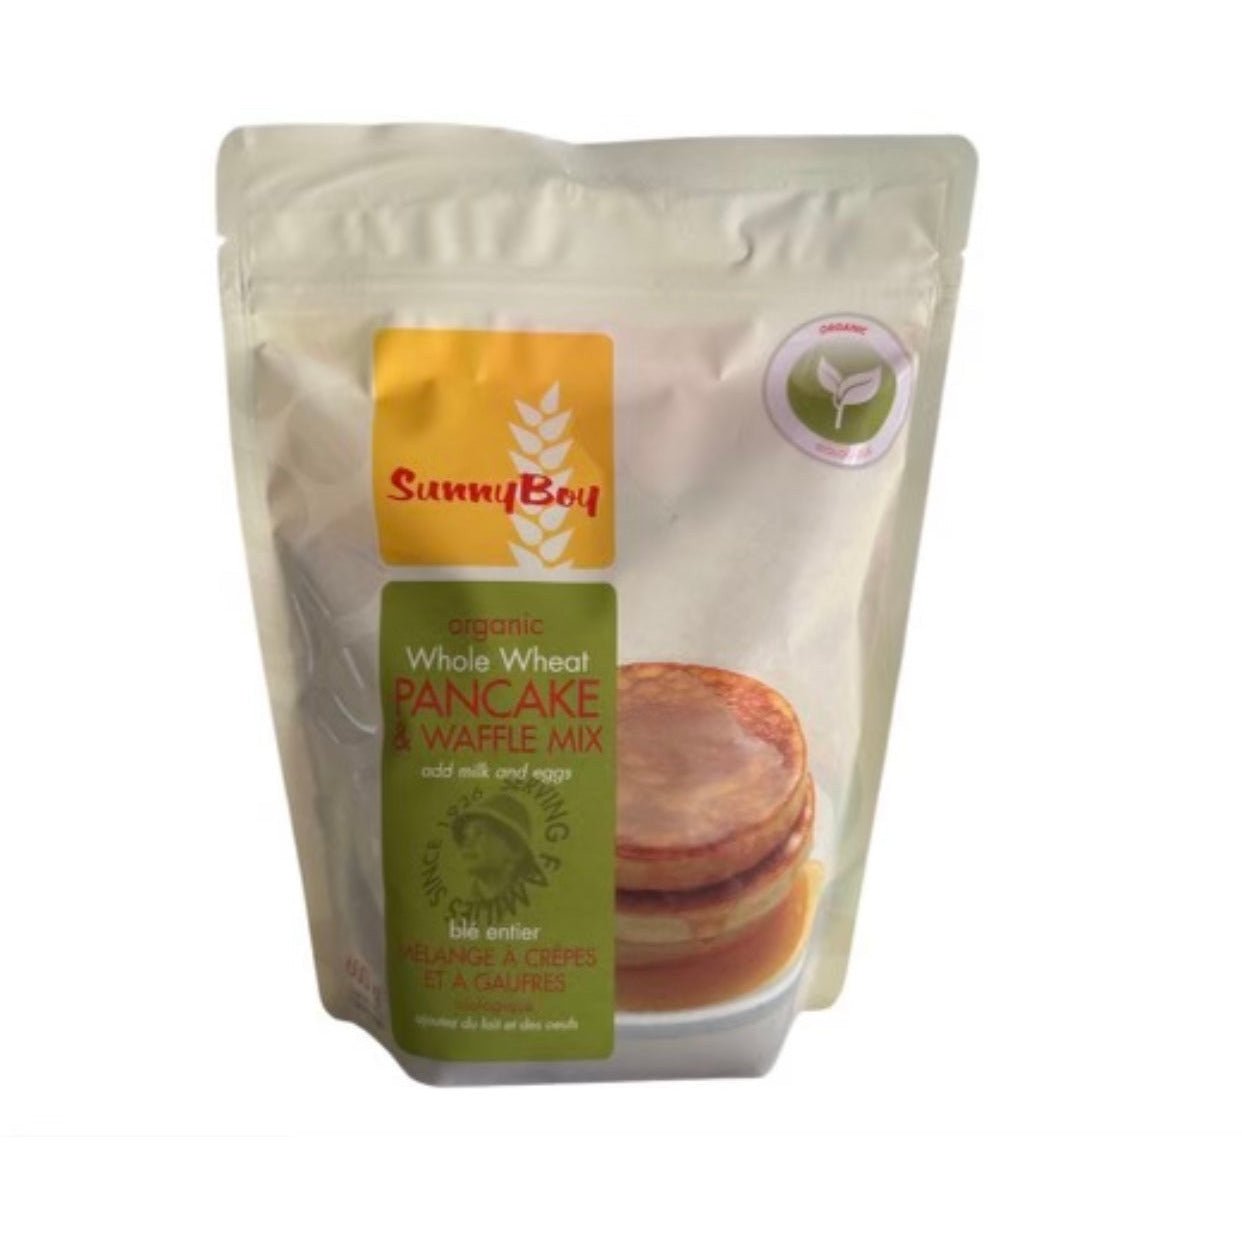 SunnyBoy Organic Whole Wheat Pancake and Waffle Mix, 600g - Just Closeouts Canada Inc.057423650039